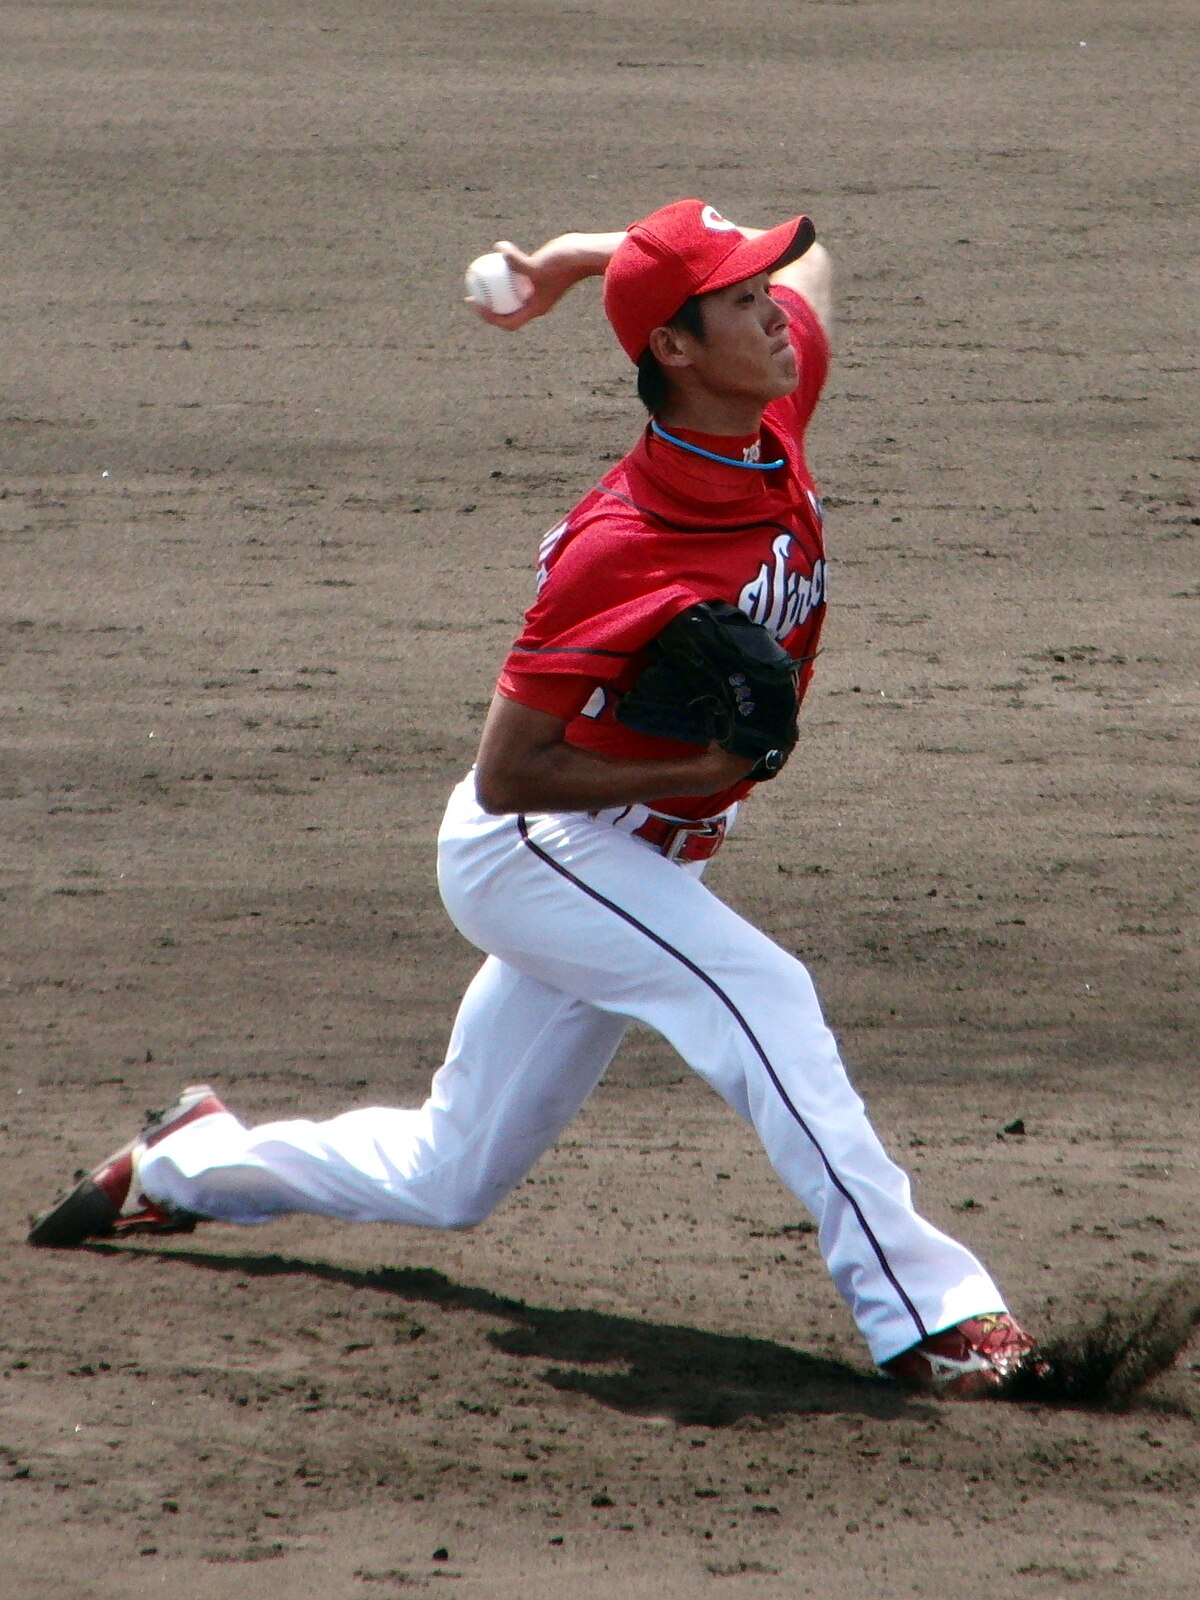 松田翔太 (野球) - Wikipedia